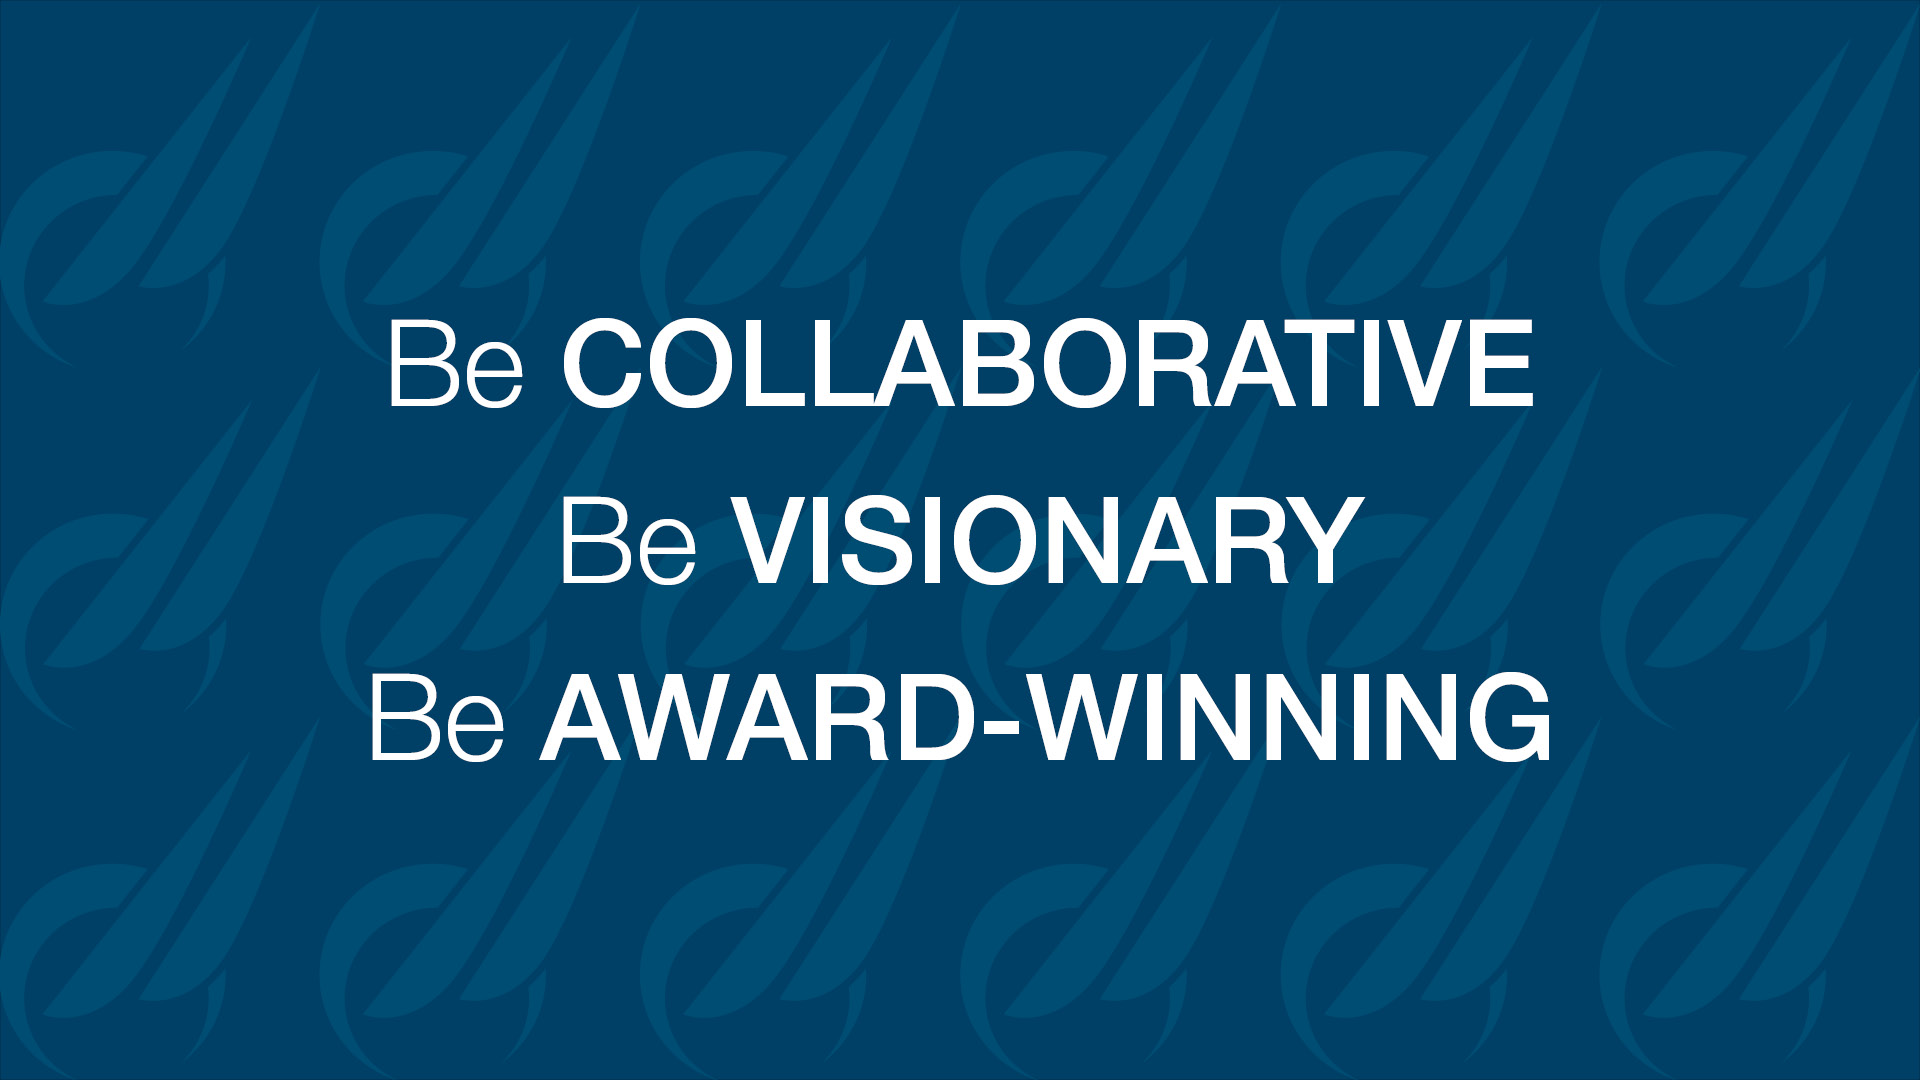 Be collaborative, be visionary, be award-winning